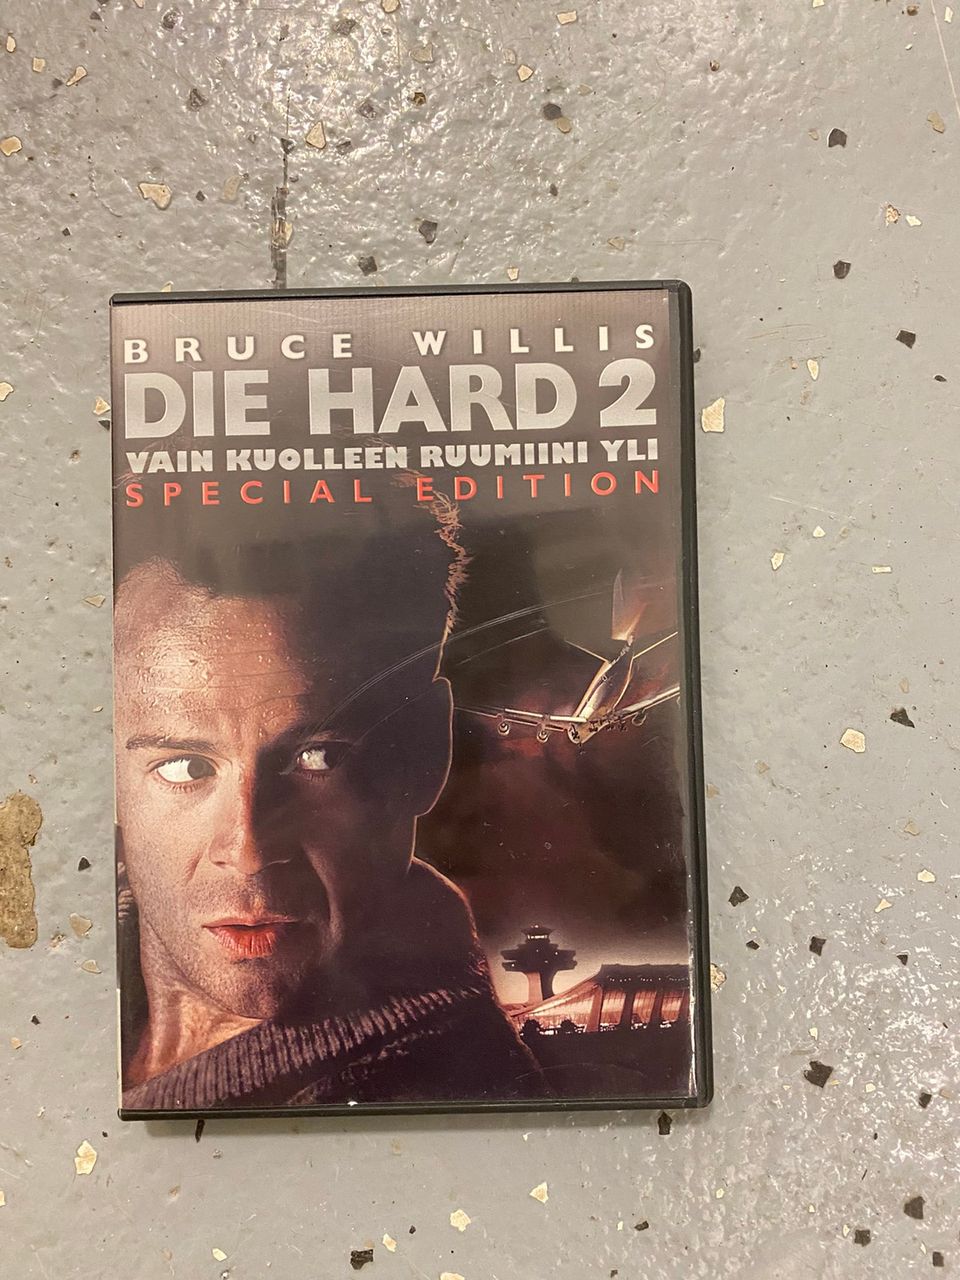 Die hard 2 dvd